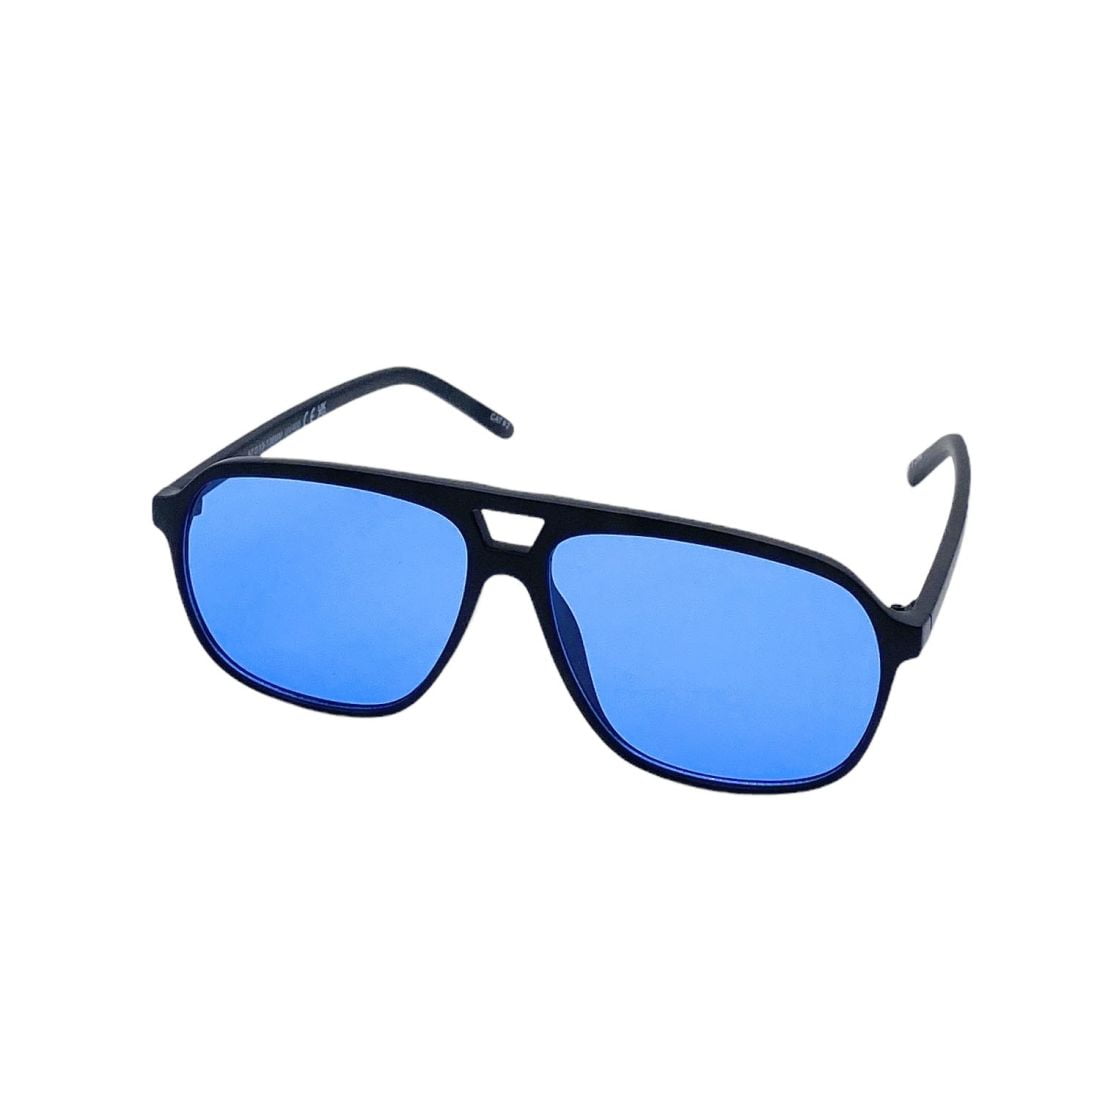 Dollger Oversized Square Aviator Sunglasses for Men India | Ubuy